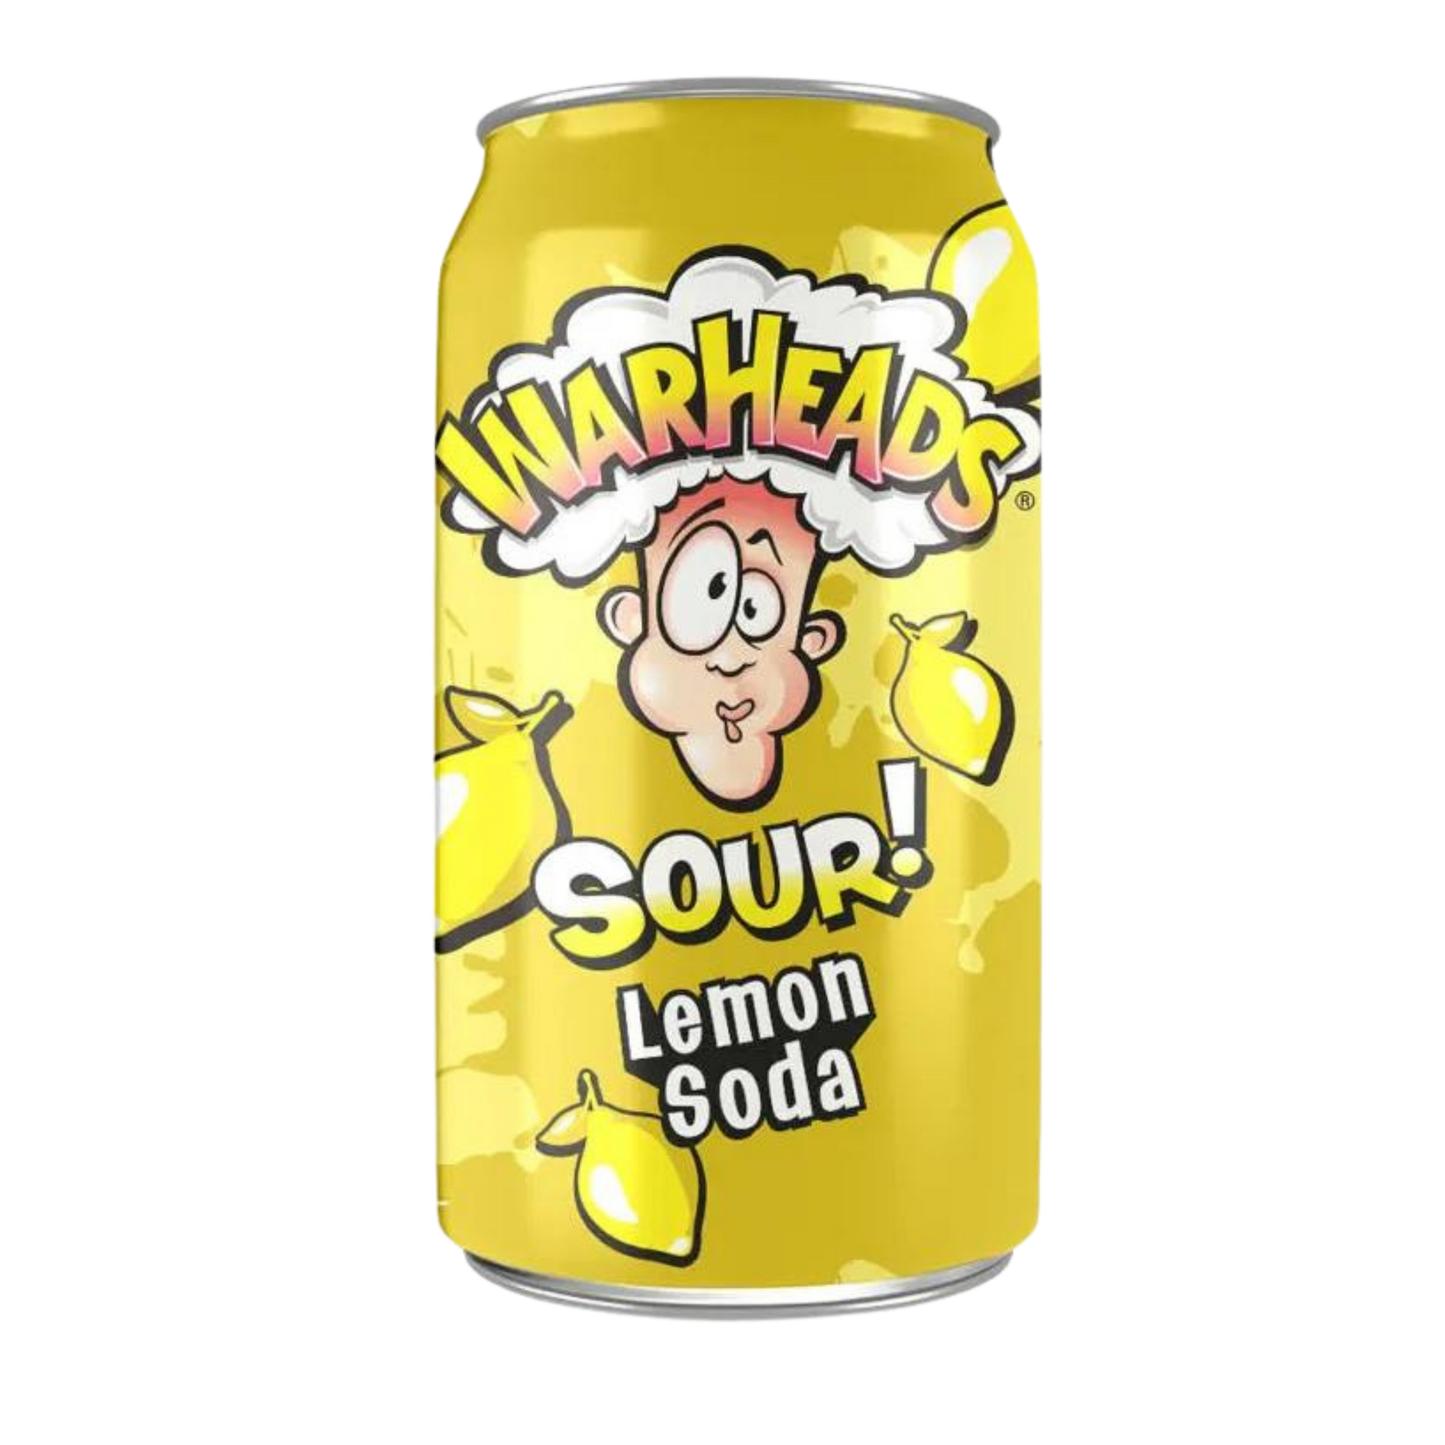 Warheads SOUR! Lemon Soda - 12oz (355ml)